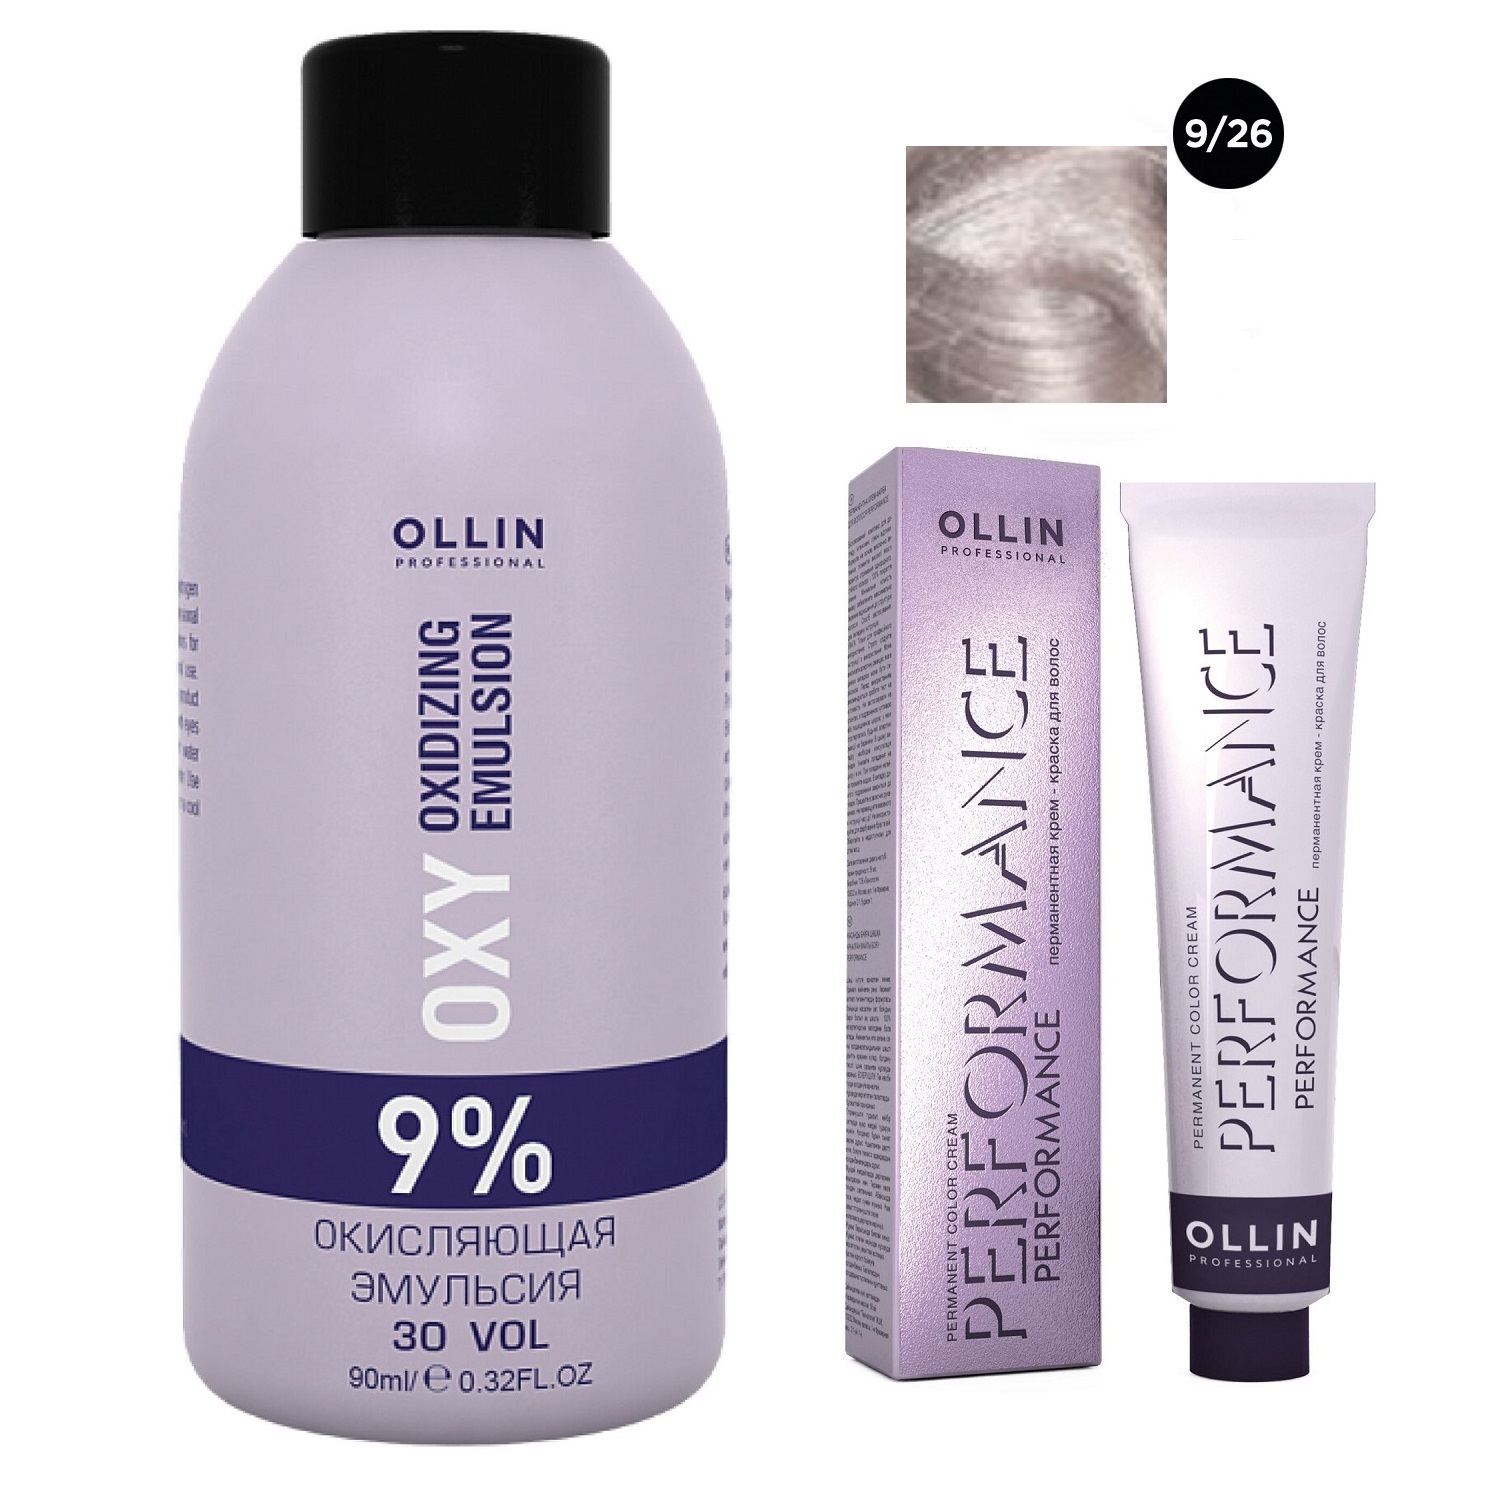 Ollin Professional Набор Перманентная крем-краска для волос Ollin Performance оттенок 9/26 блондин розовый 60 мл + Окисляющая эмульсия Oxy 9% 90 мл (Ollin Professional, Performance) окисляющая эмульсия ollin professional performance oxy 9% 30vol 90 мл